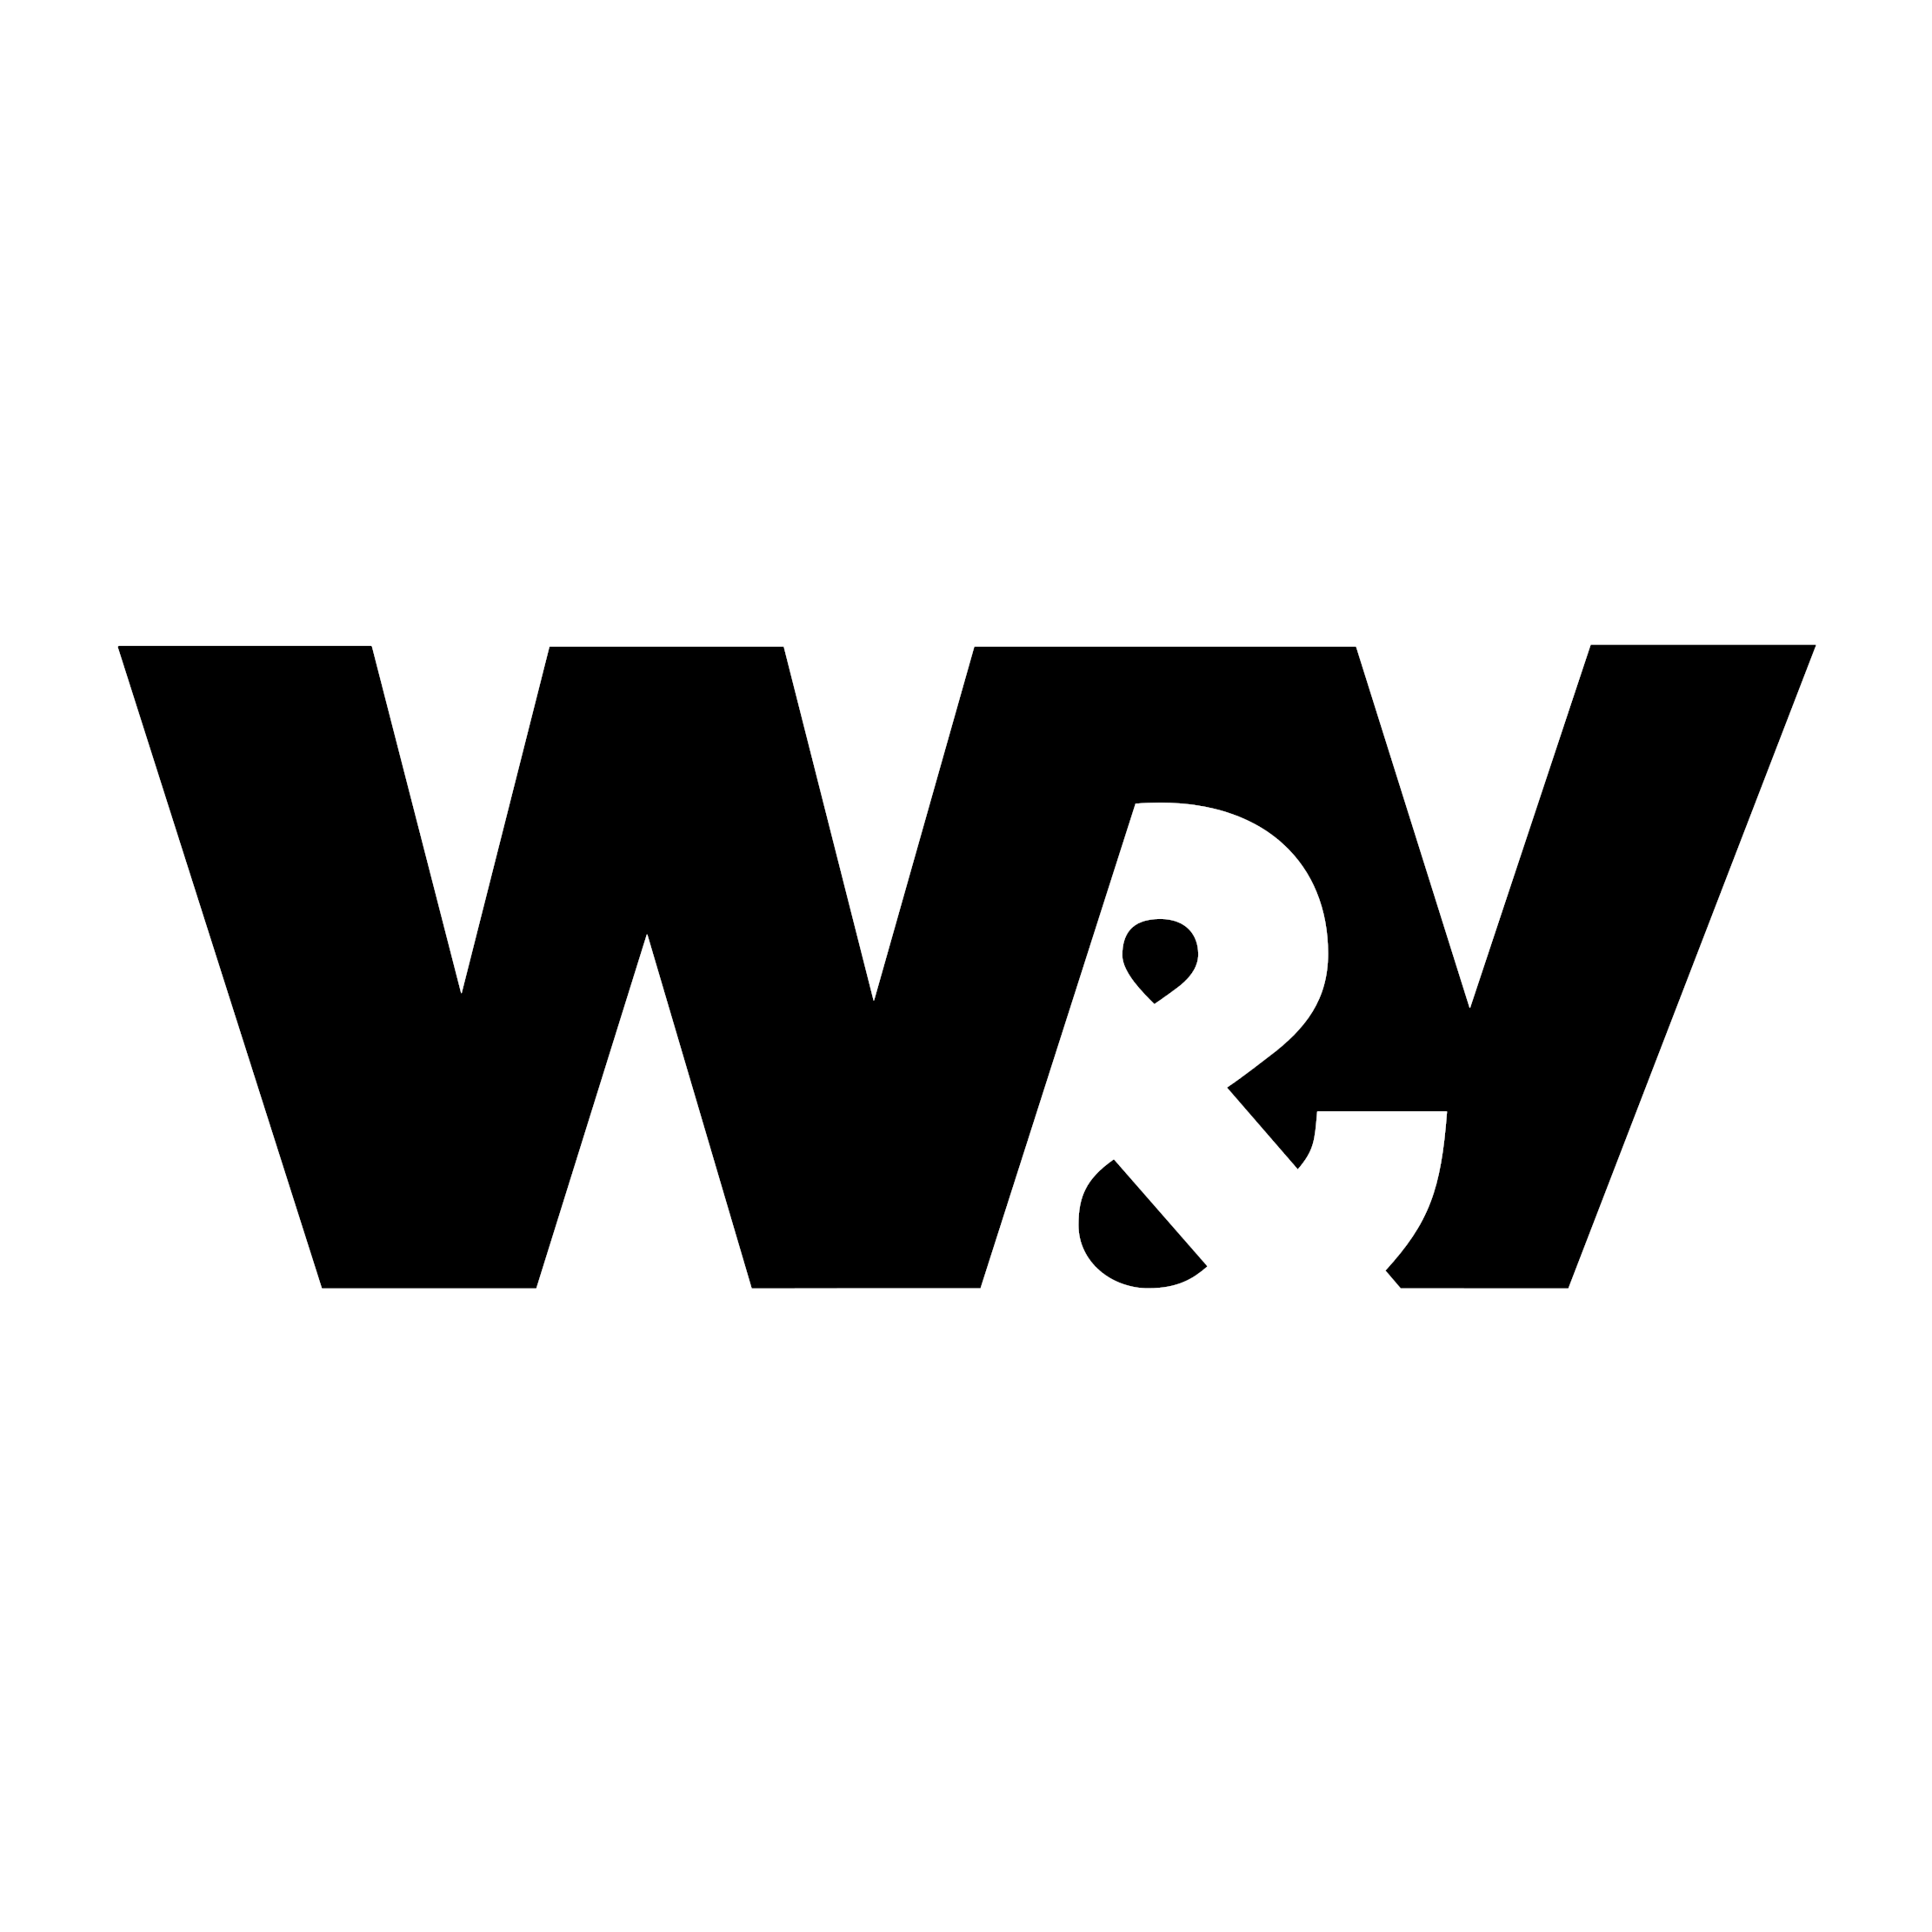 W&V Podcast Day 2022